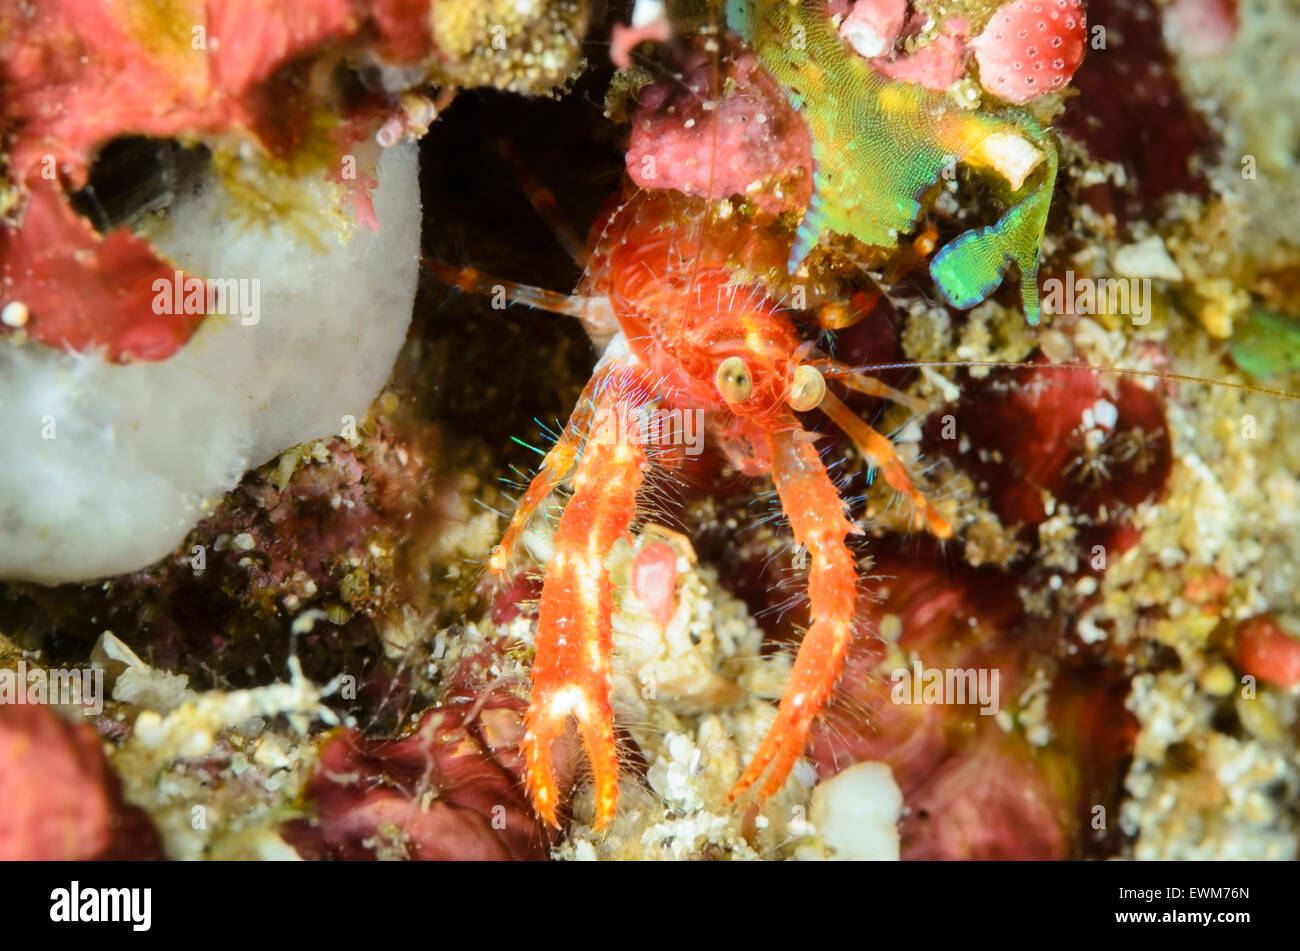 Squat lobster, Munida olivarae, Anilao, Batangas, Philippines, Pacific Stock Photo